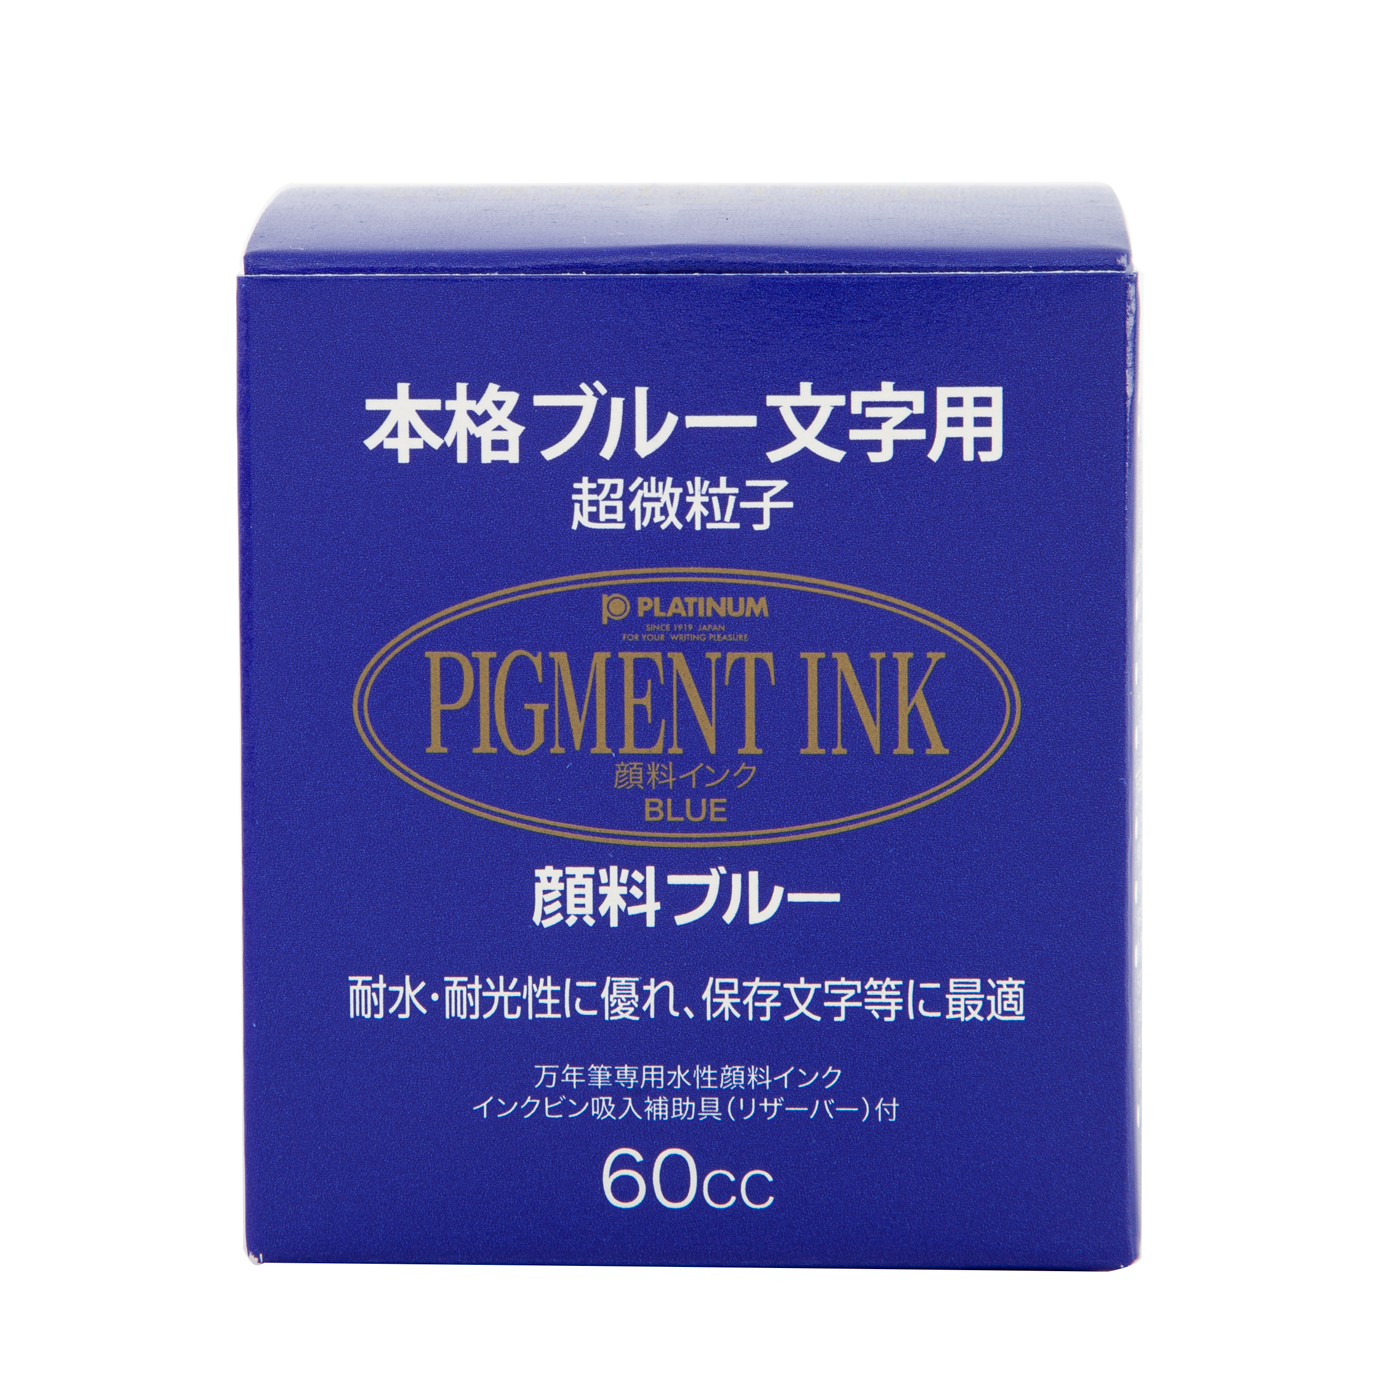 Platinum Pigment Ink - Ink Bottle (4 colors) - Inkt / Ink